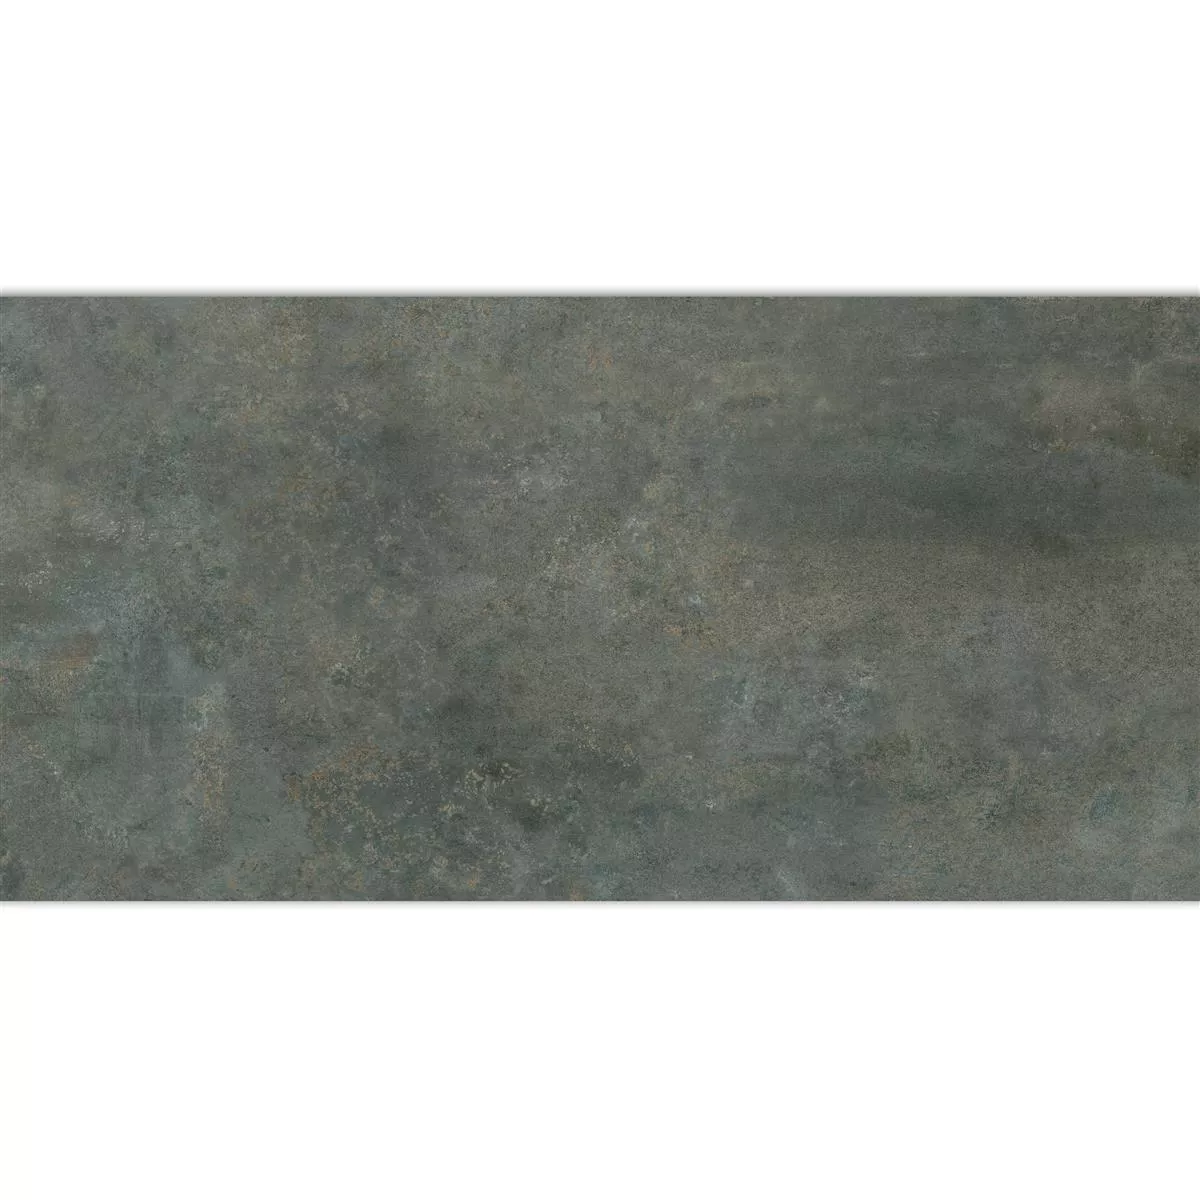 Πλακάκι Δαπέδου Illusion Μεταλλική Εμφάνιση Lappato Ατσάλι Γκρι 30x60cm